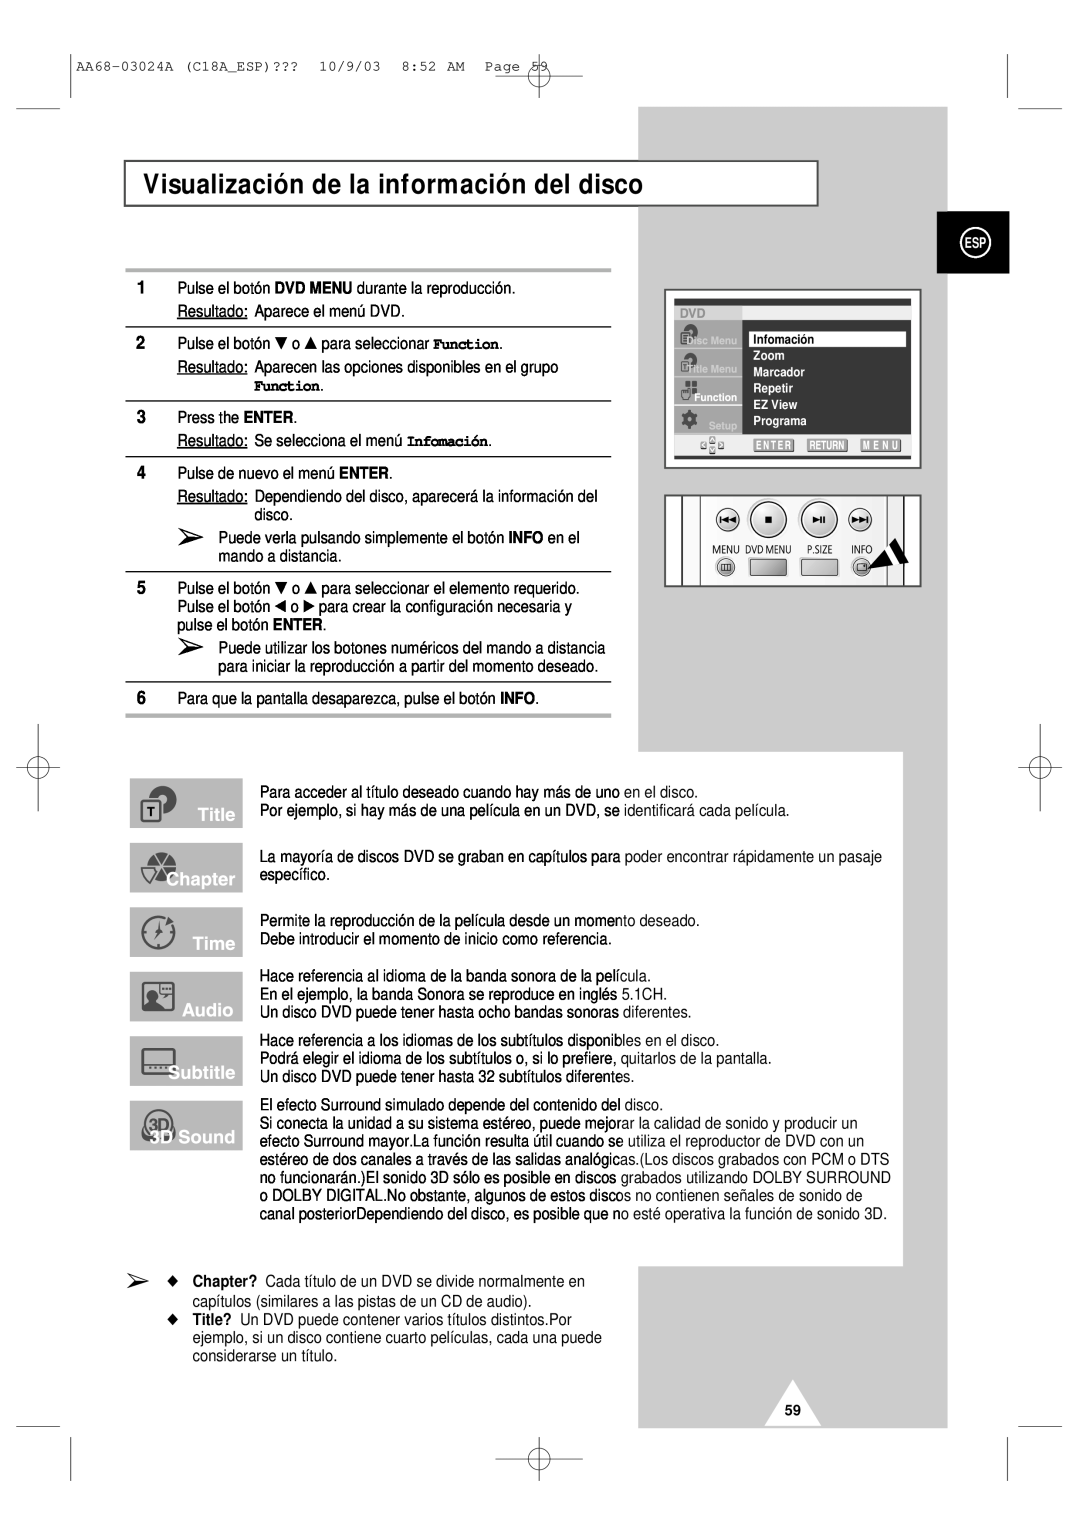 Samsung UW17J11VD5XXEF, UW17J11VD5XXEC manual Visualización de la información del disco, Function 